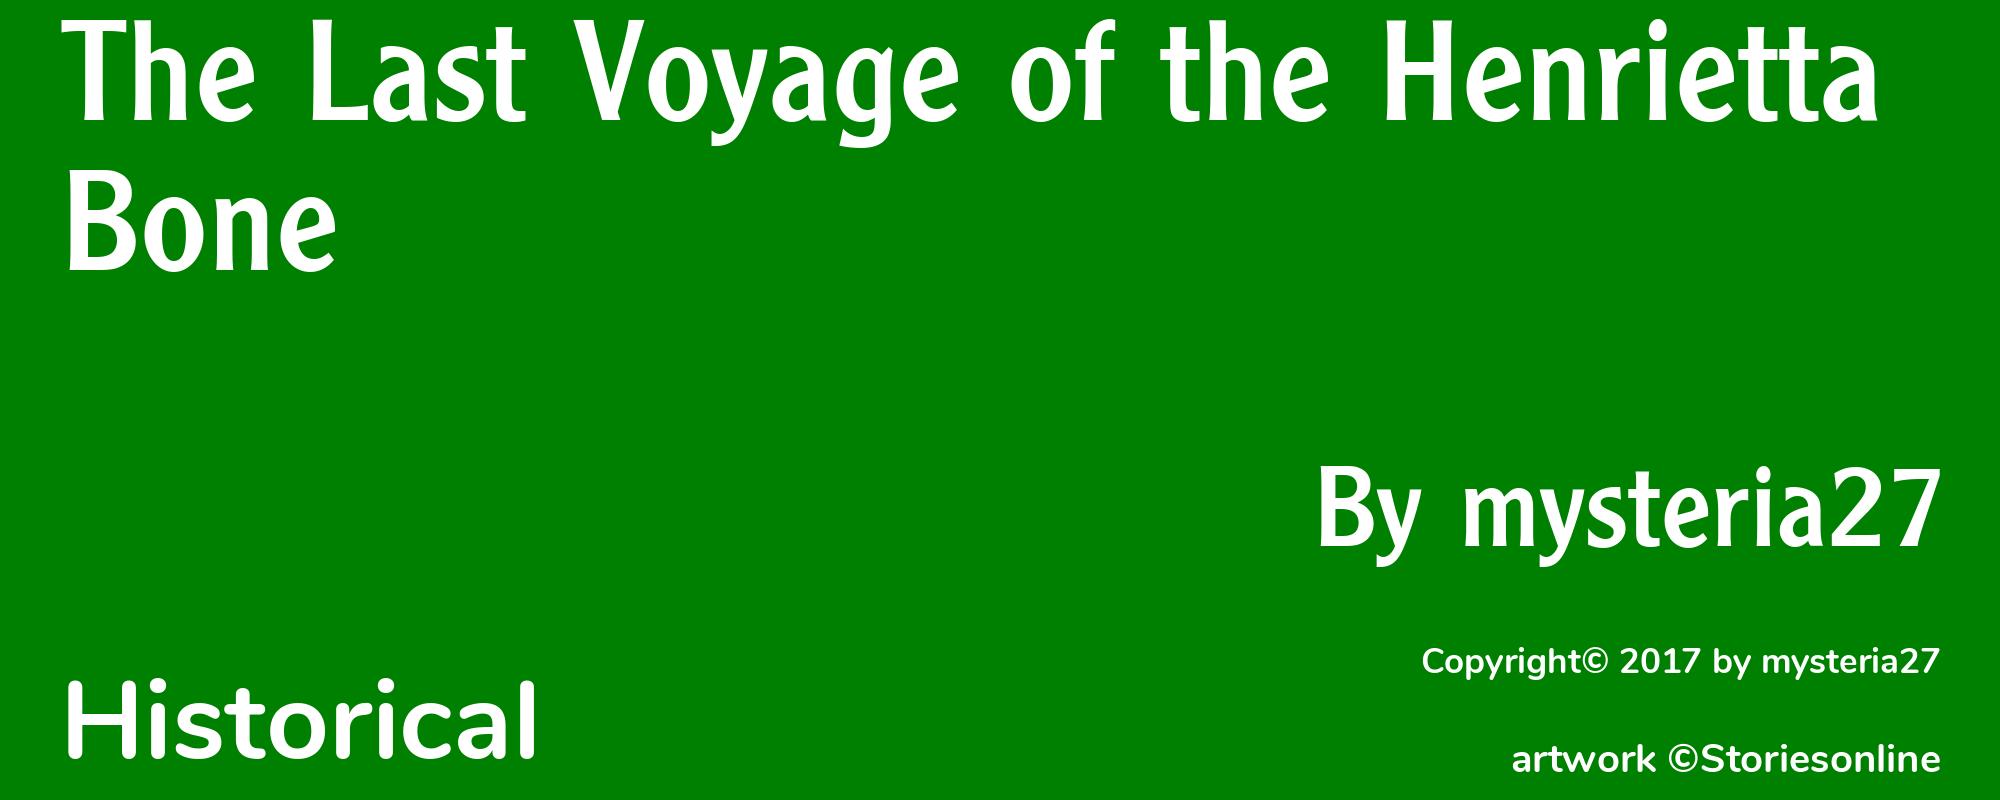 The Last Voyage of the Henrietta Bone - Cover